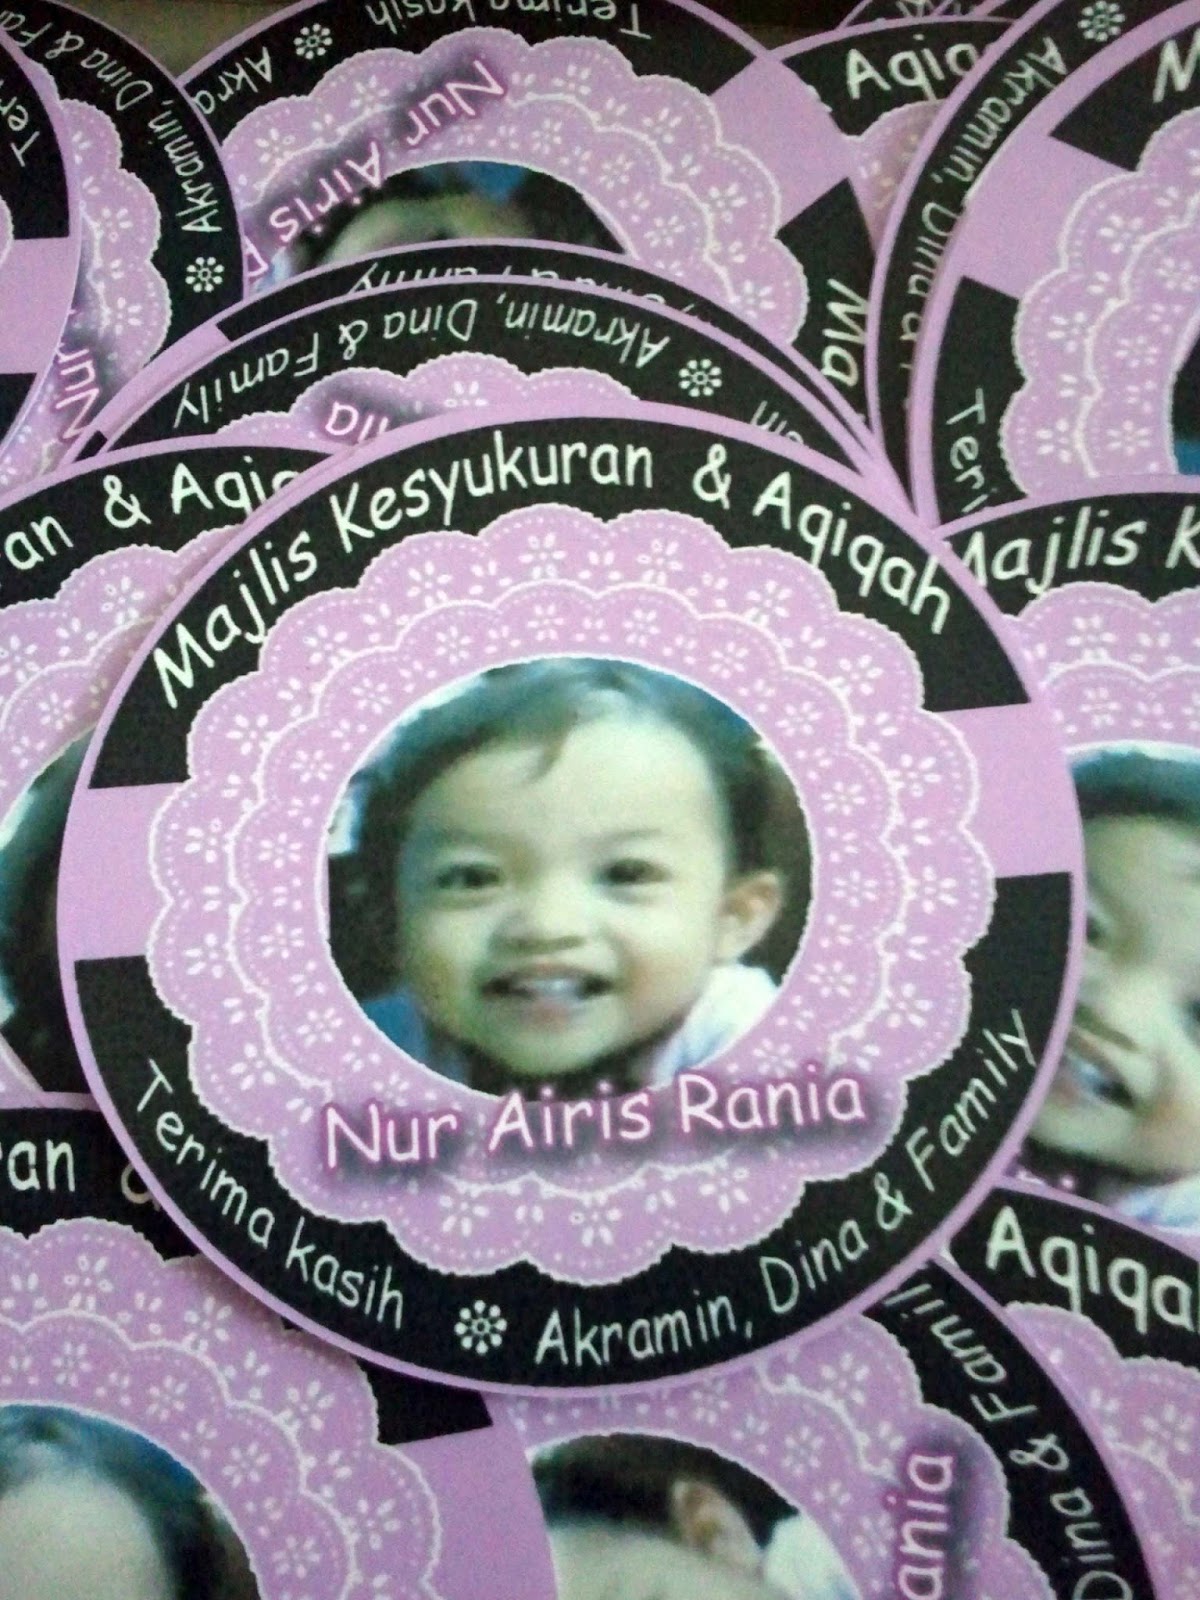 R&Zgift Sticker untuk majlis aqiqah / majlis kesyukuran